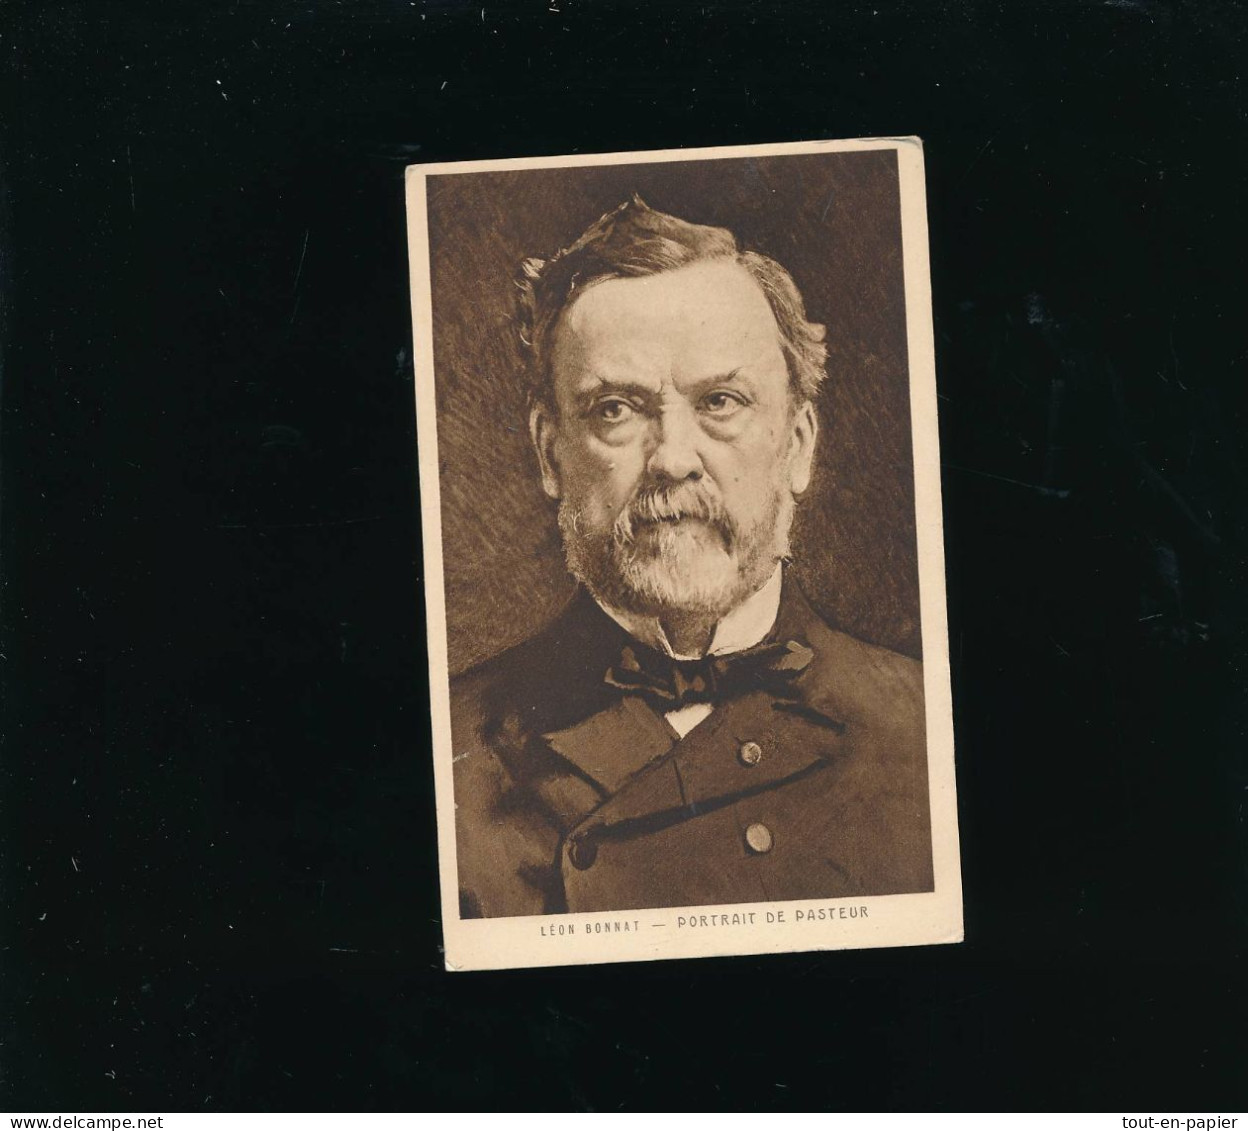 CPA  - Portrait De Louis Pasteur - Leon Bonnat - Historical Famous People